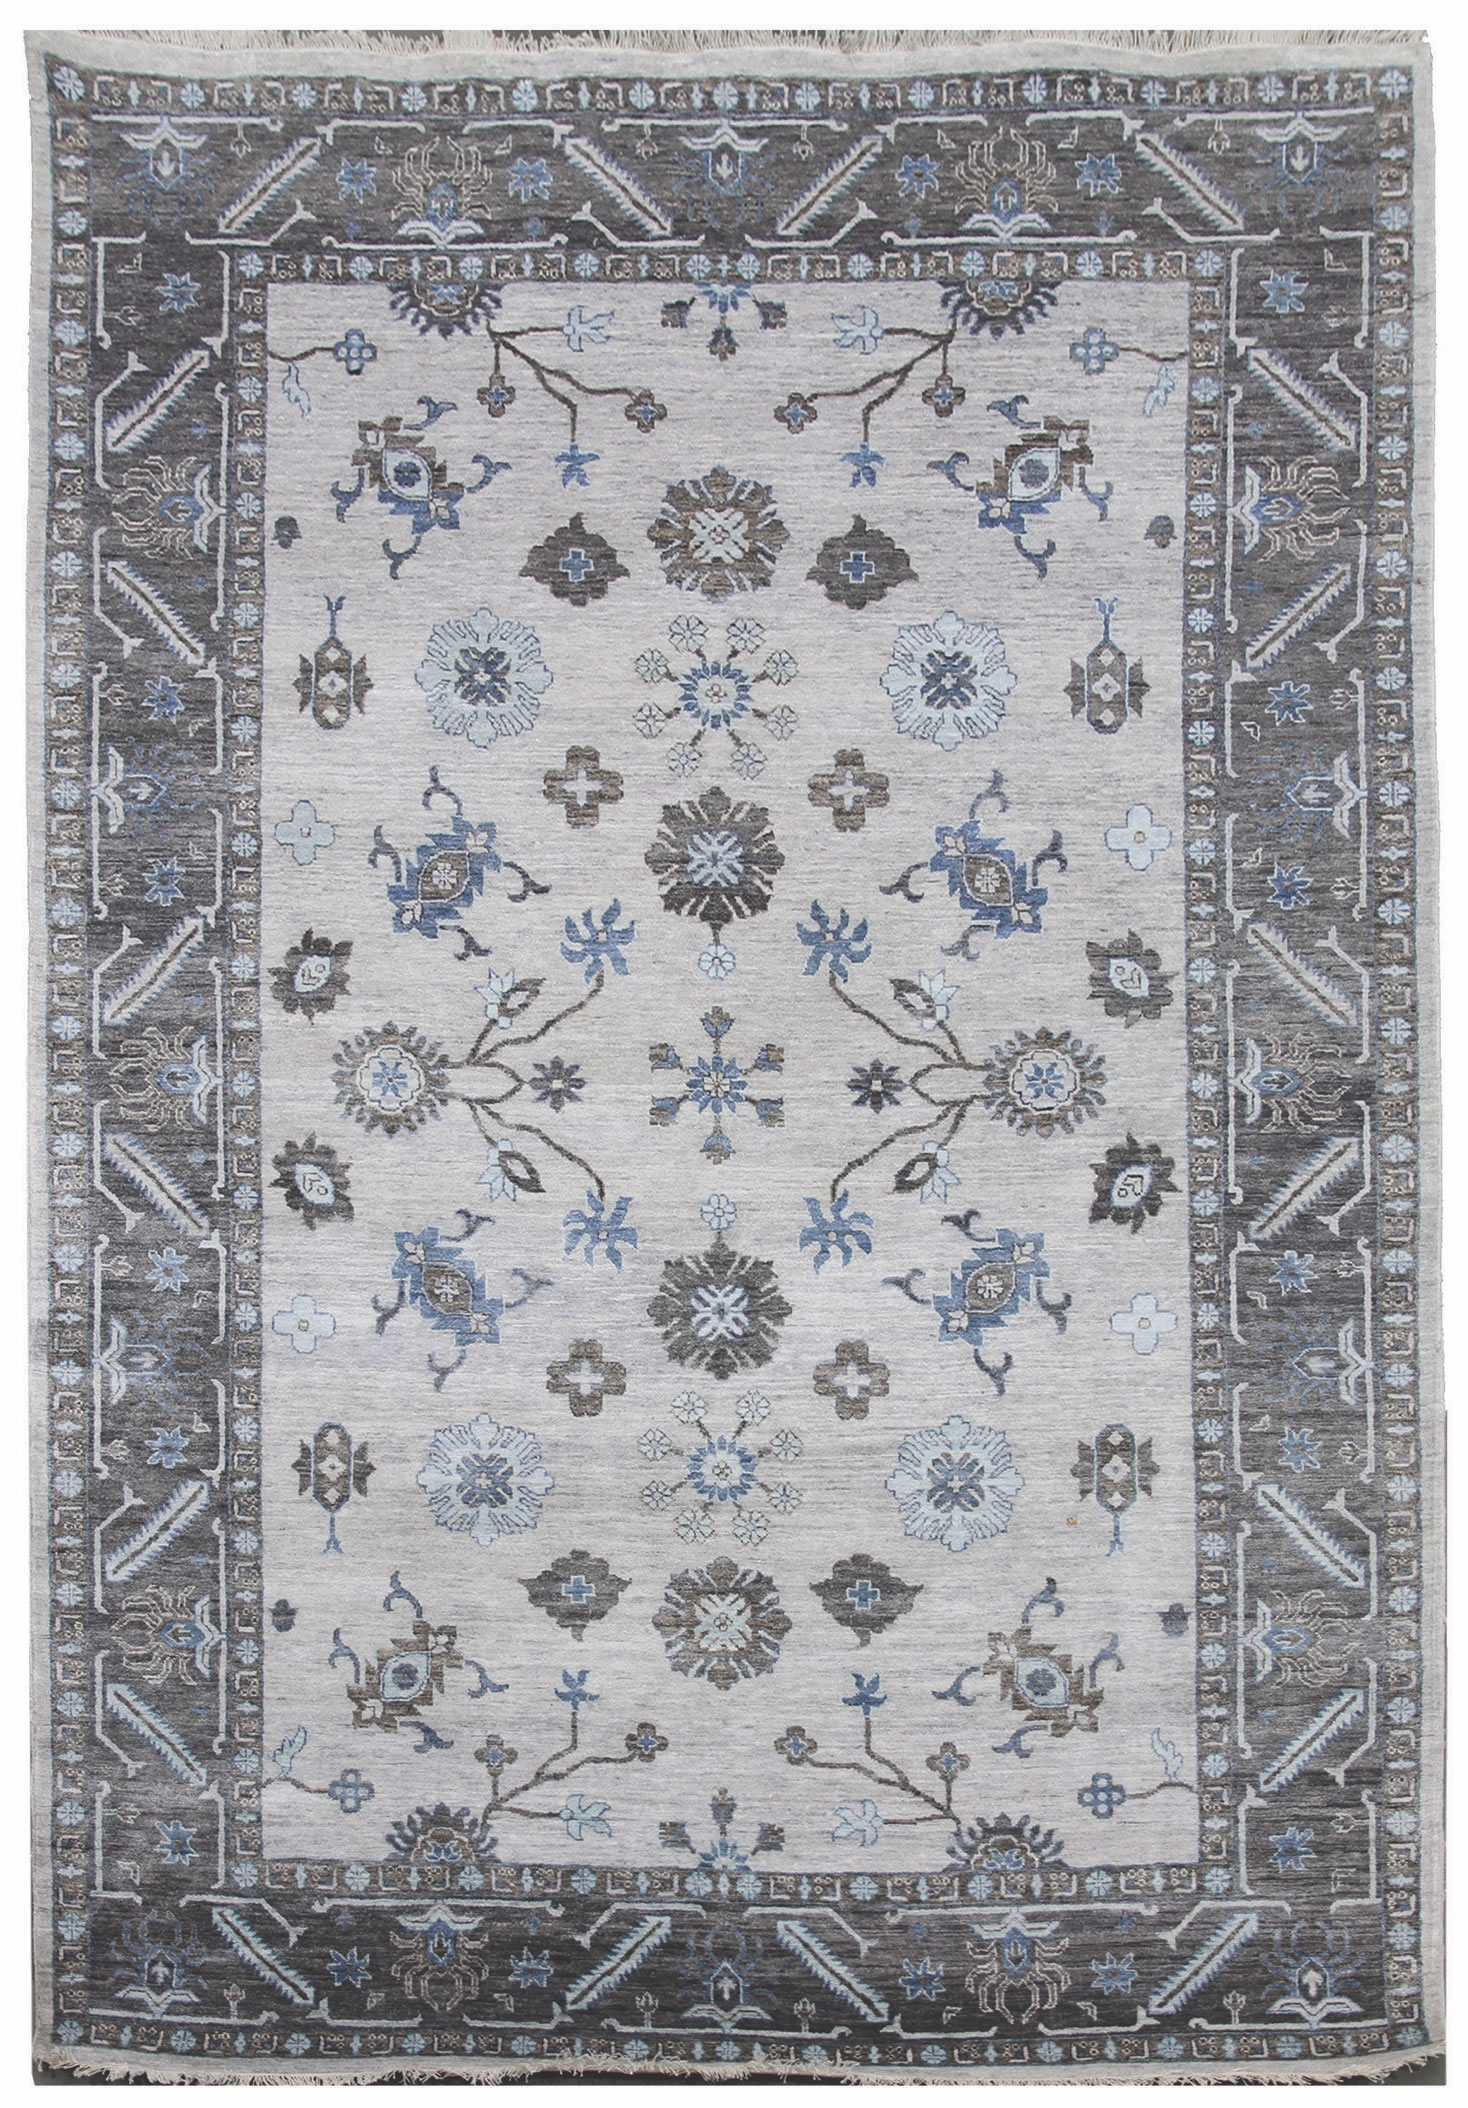 Ručne viazaný kusový koberec Diamond DC-USHAK silver / black - 305x425 cm Diamond Carpets koberce 